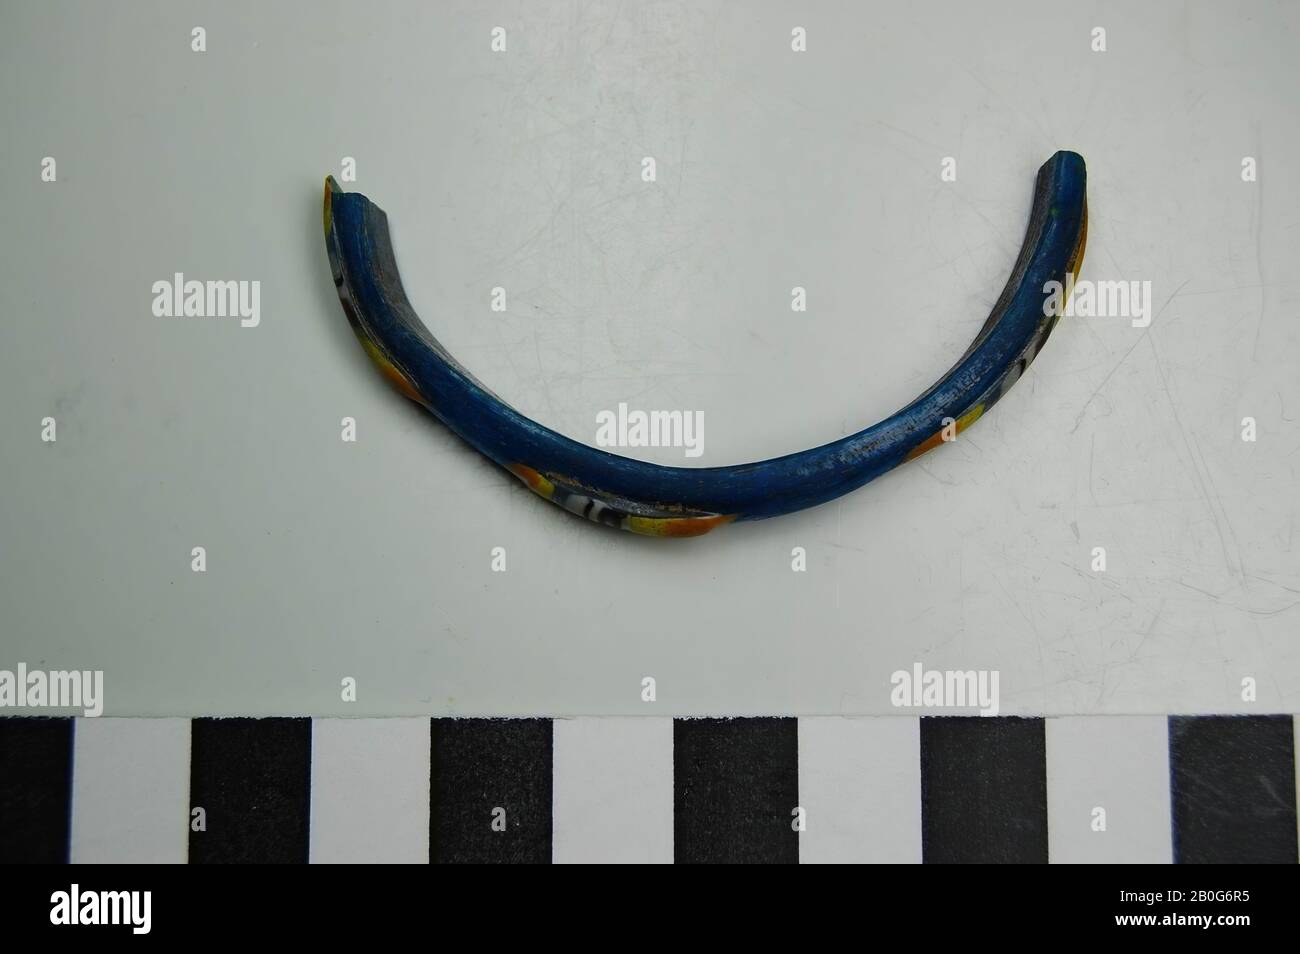 Fragment de bracelet en verre avec décoration en bleu, jaune et orange. Ancien numéro d'inventaire: 12287., bracelet, fragment, verre, 6 cm, Roman 50-100, Egypte Banque D'Images